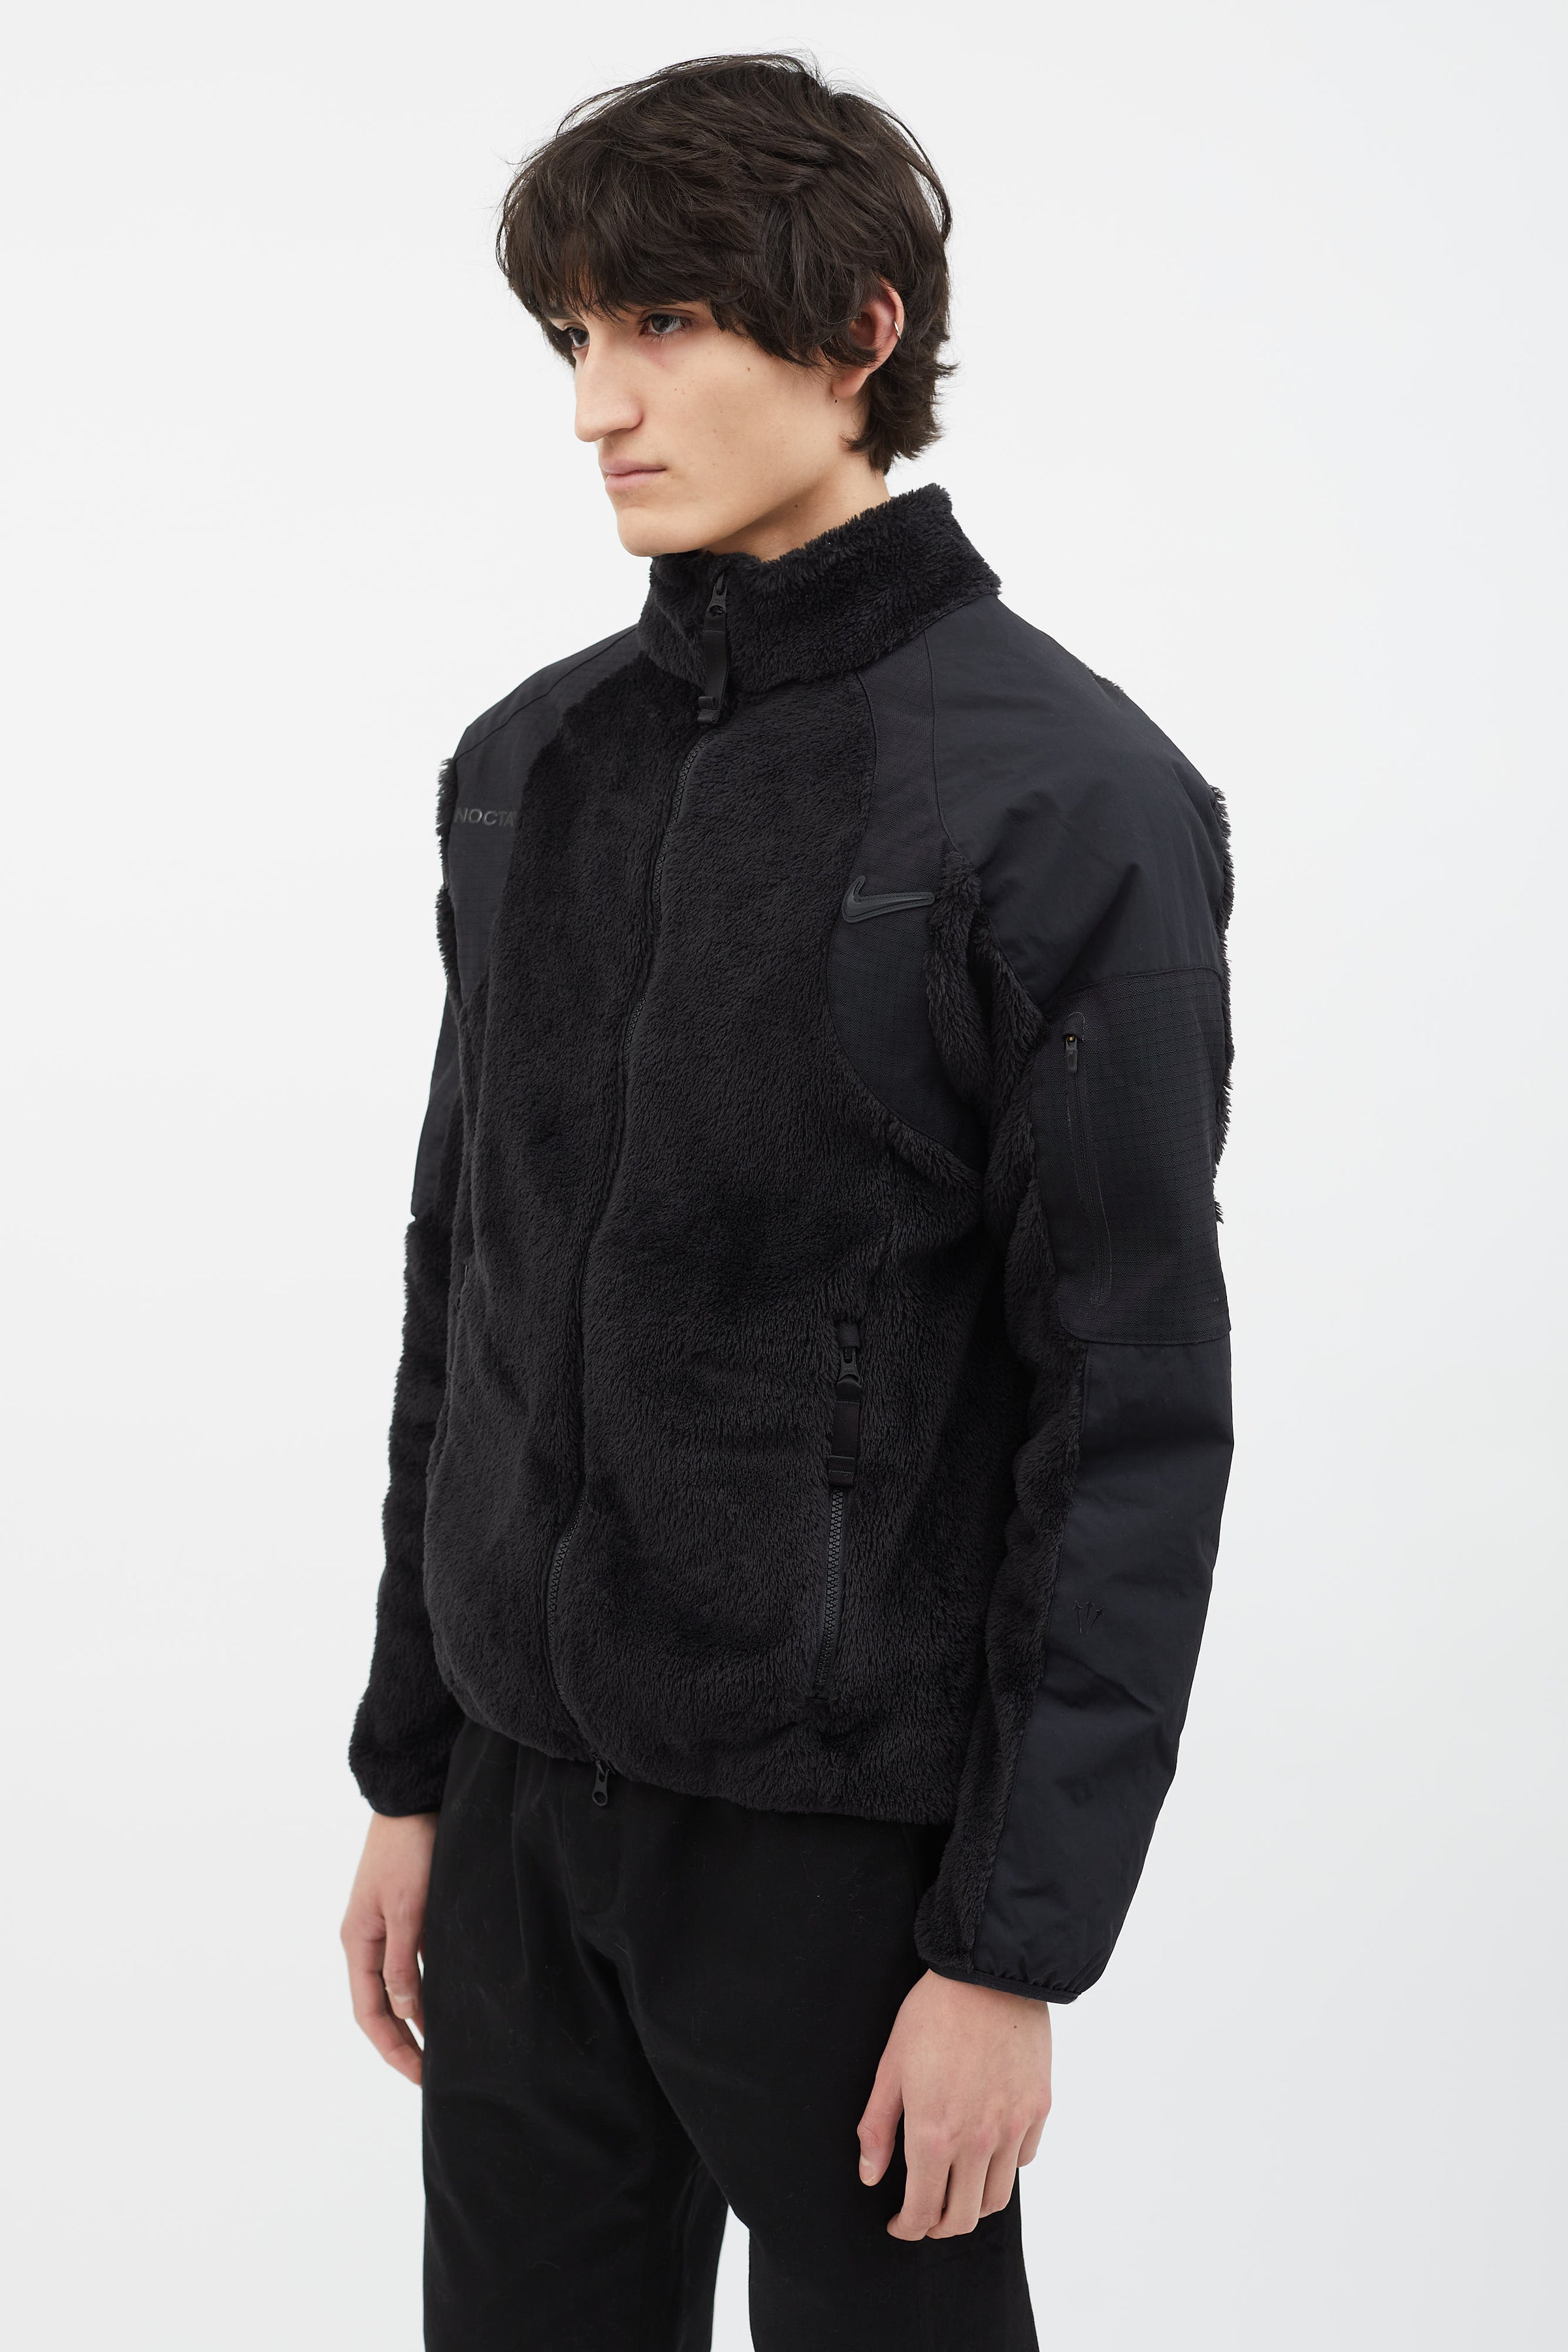 Nike // X NOCTA Black Zip Fleece Jacket – VSP Consignment